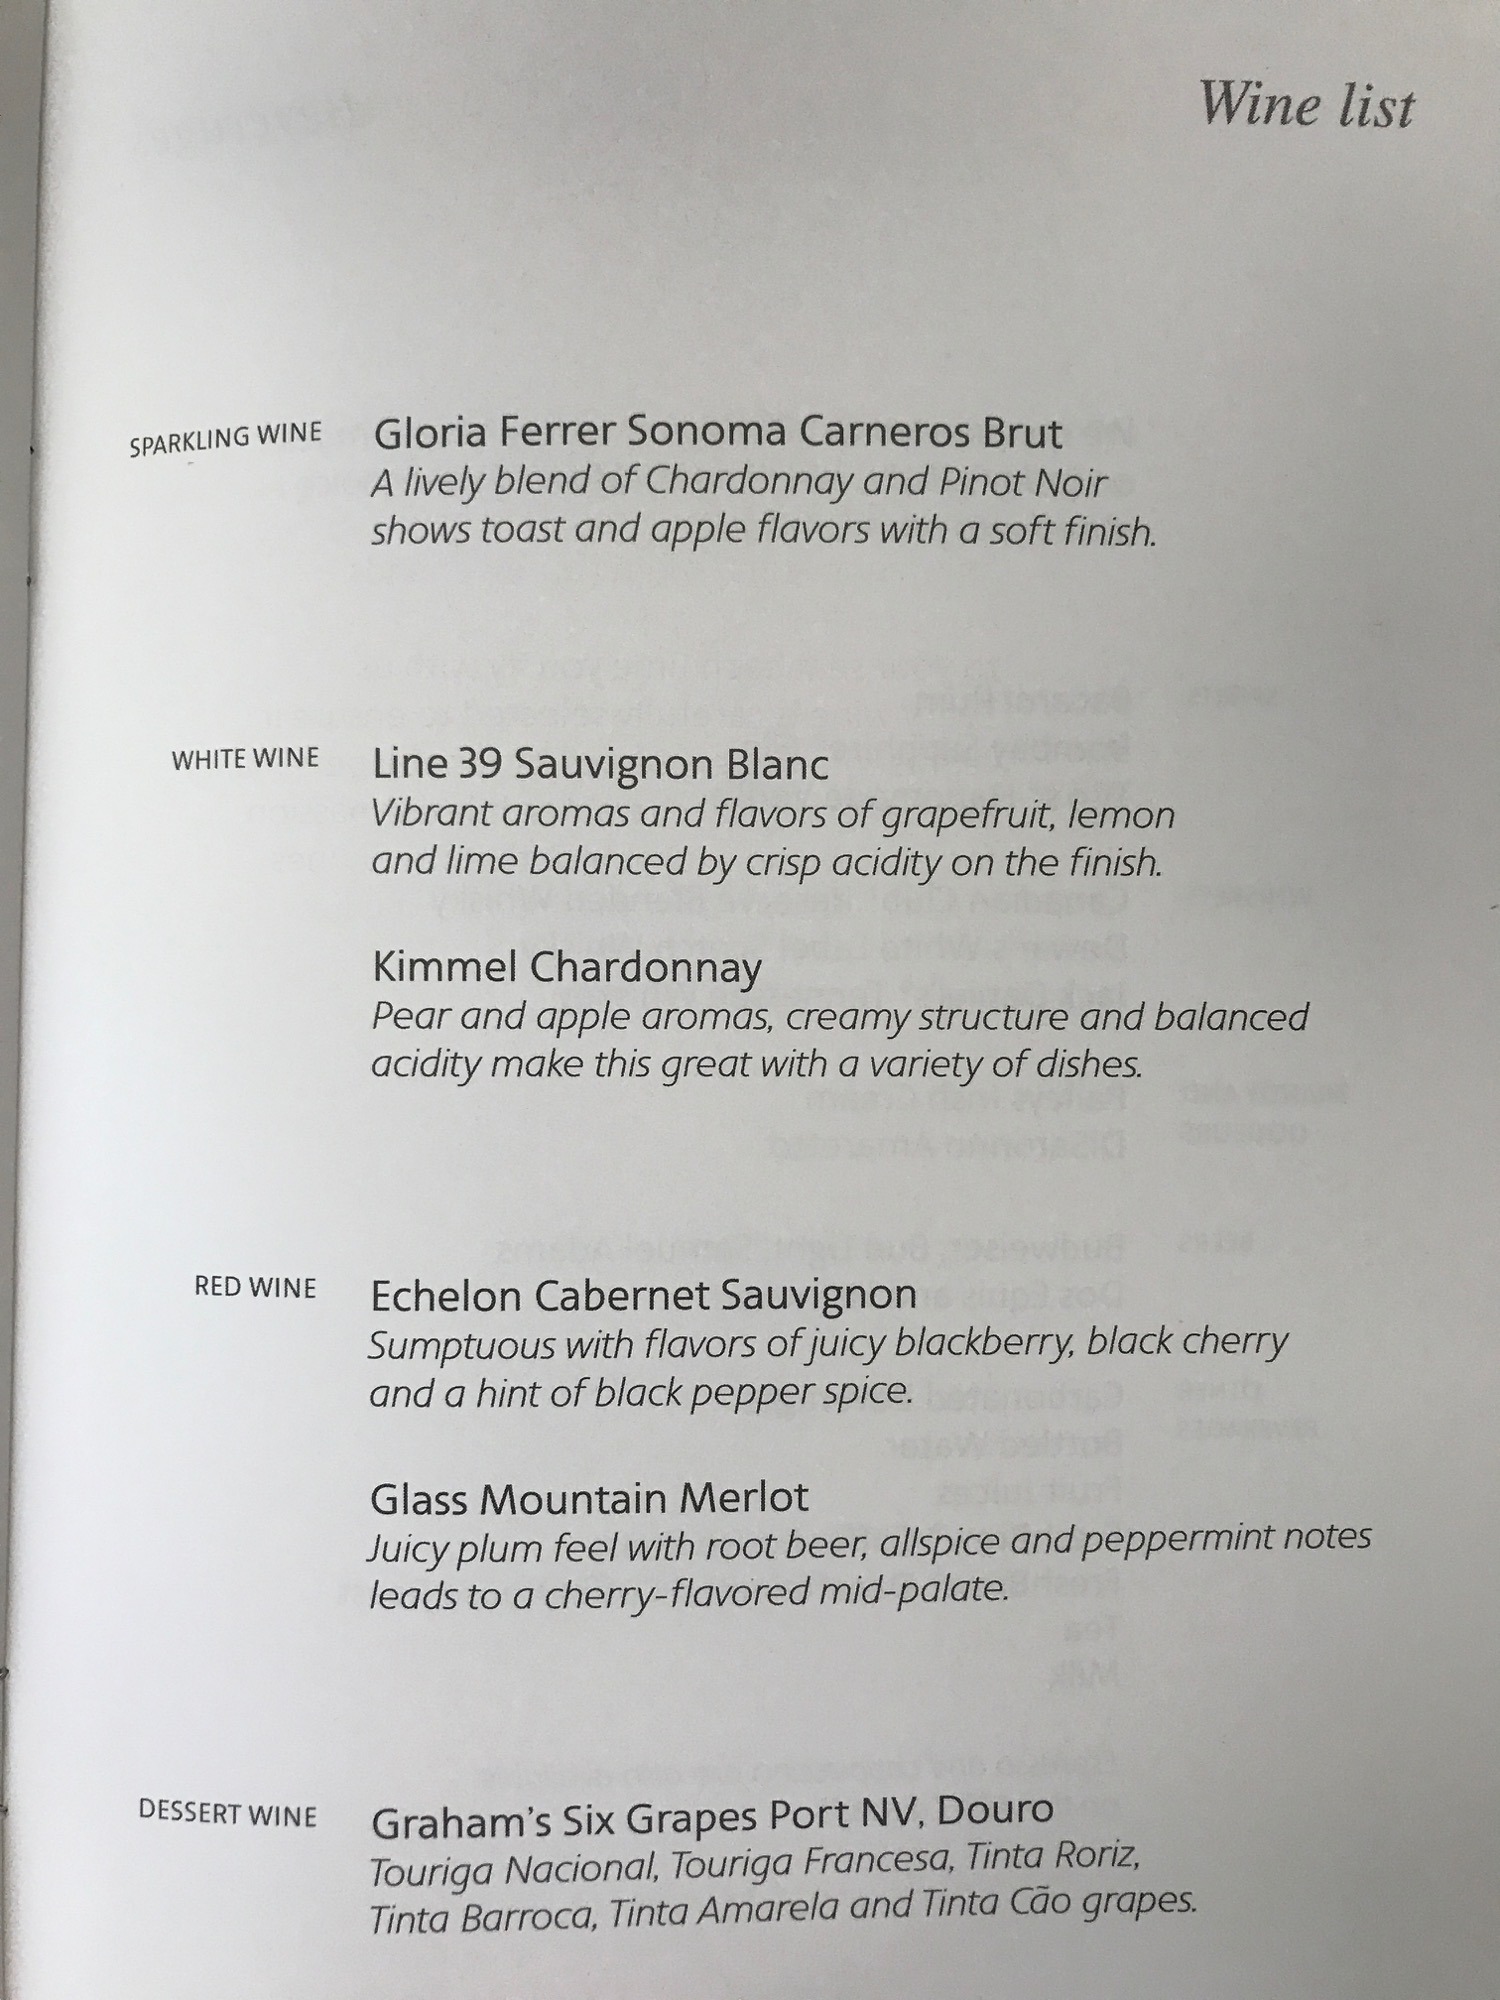 a menu of wine in a book